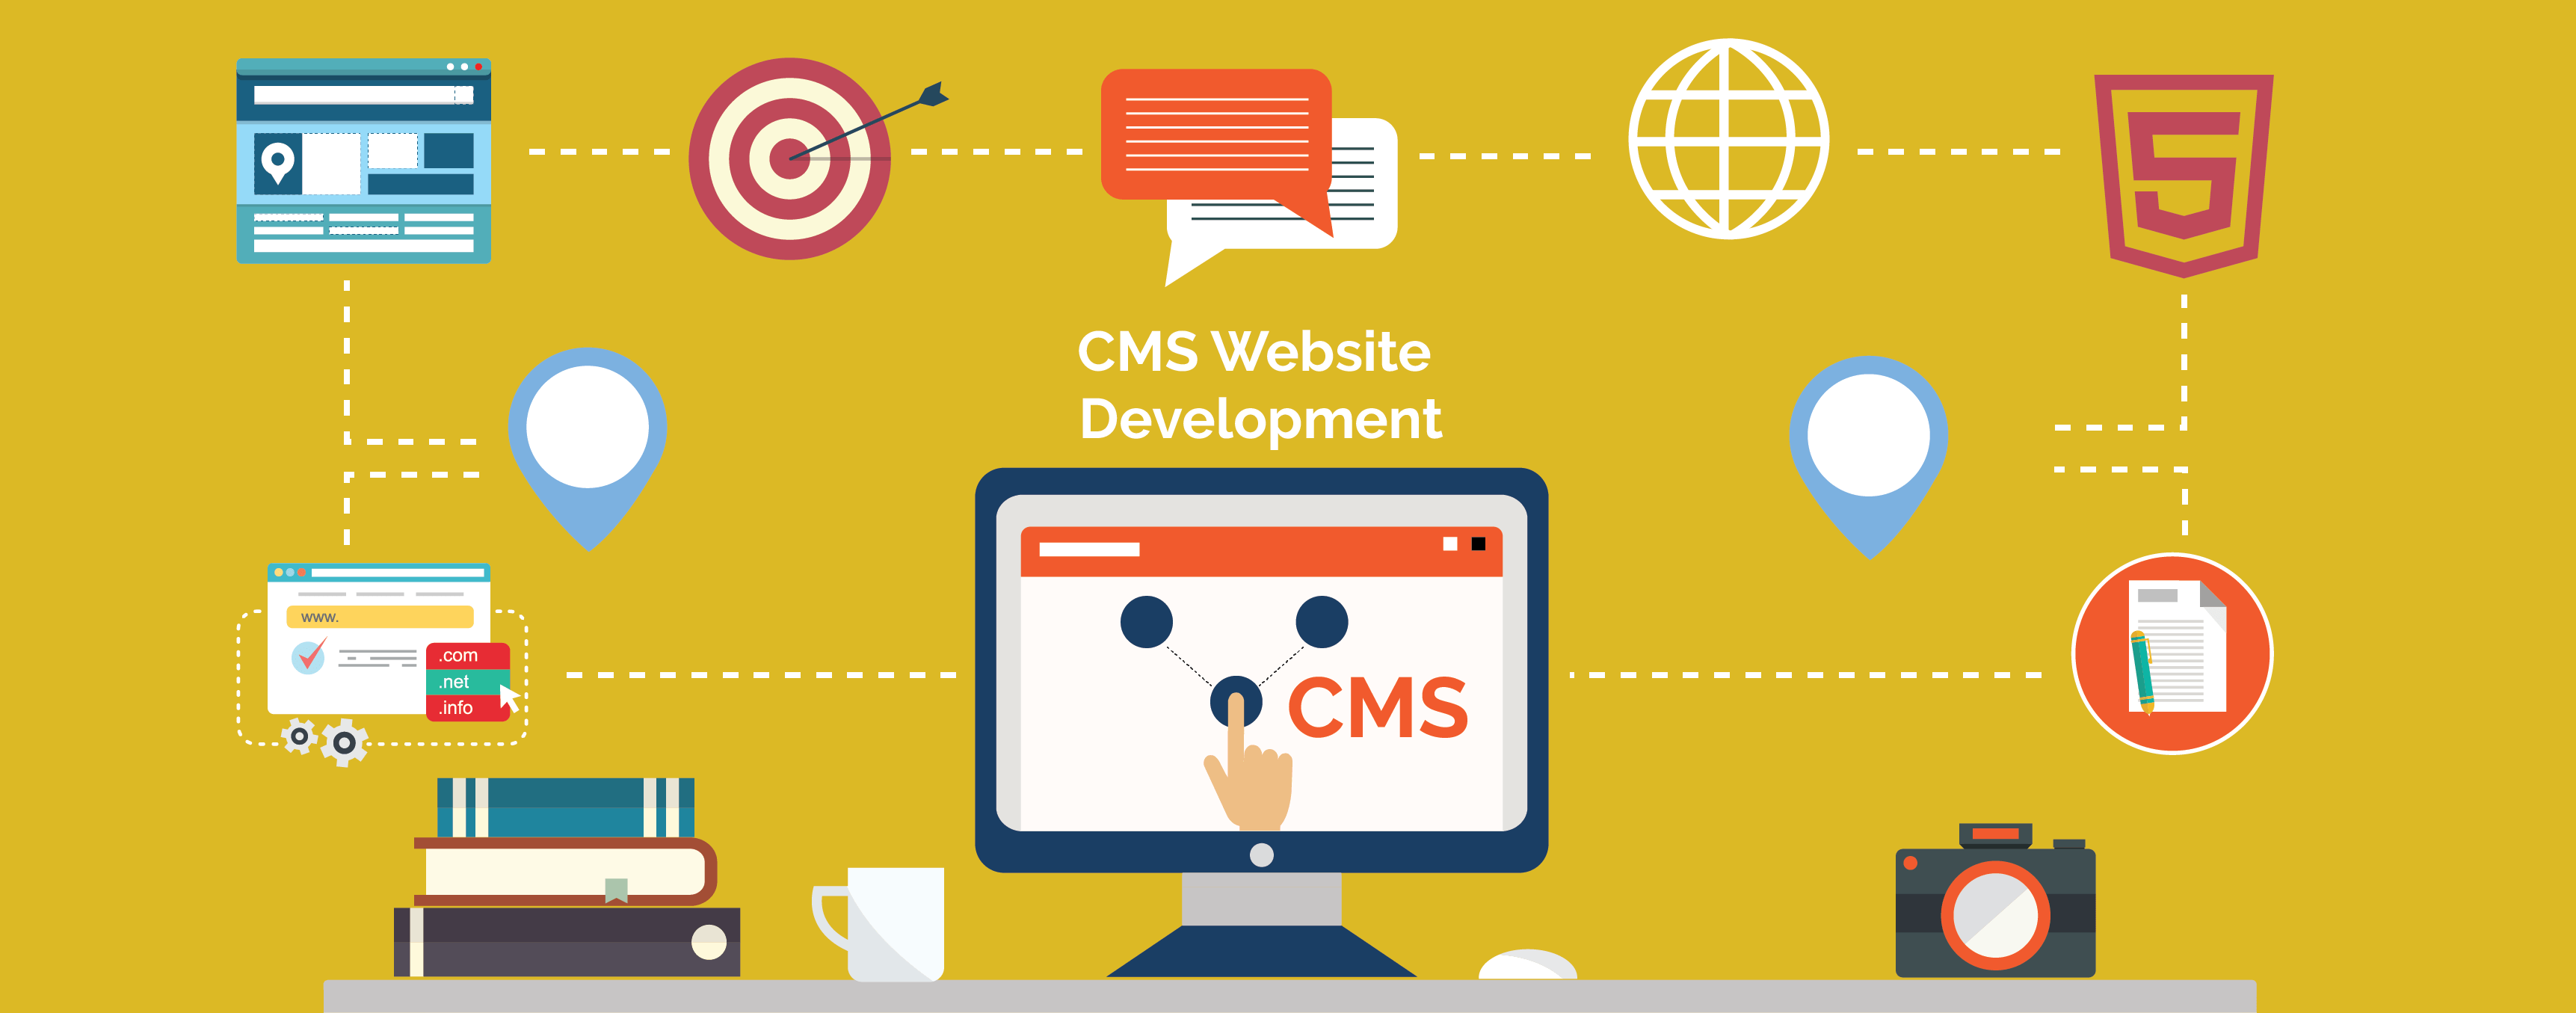 Web CMS là gì? Tìm hiểu về Hệ thống Quản lý Nội dung cho Website